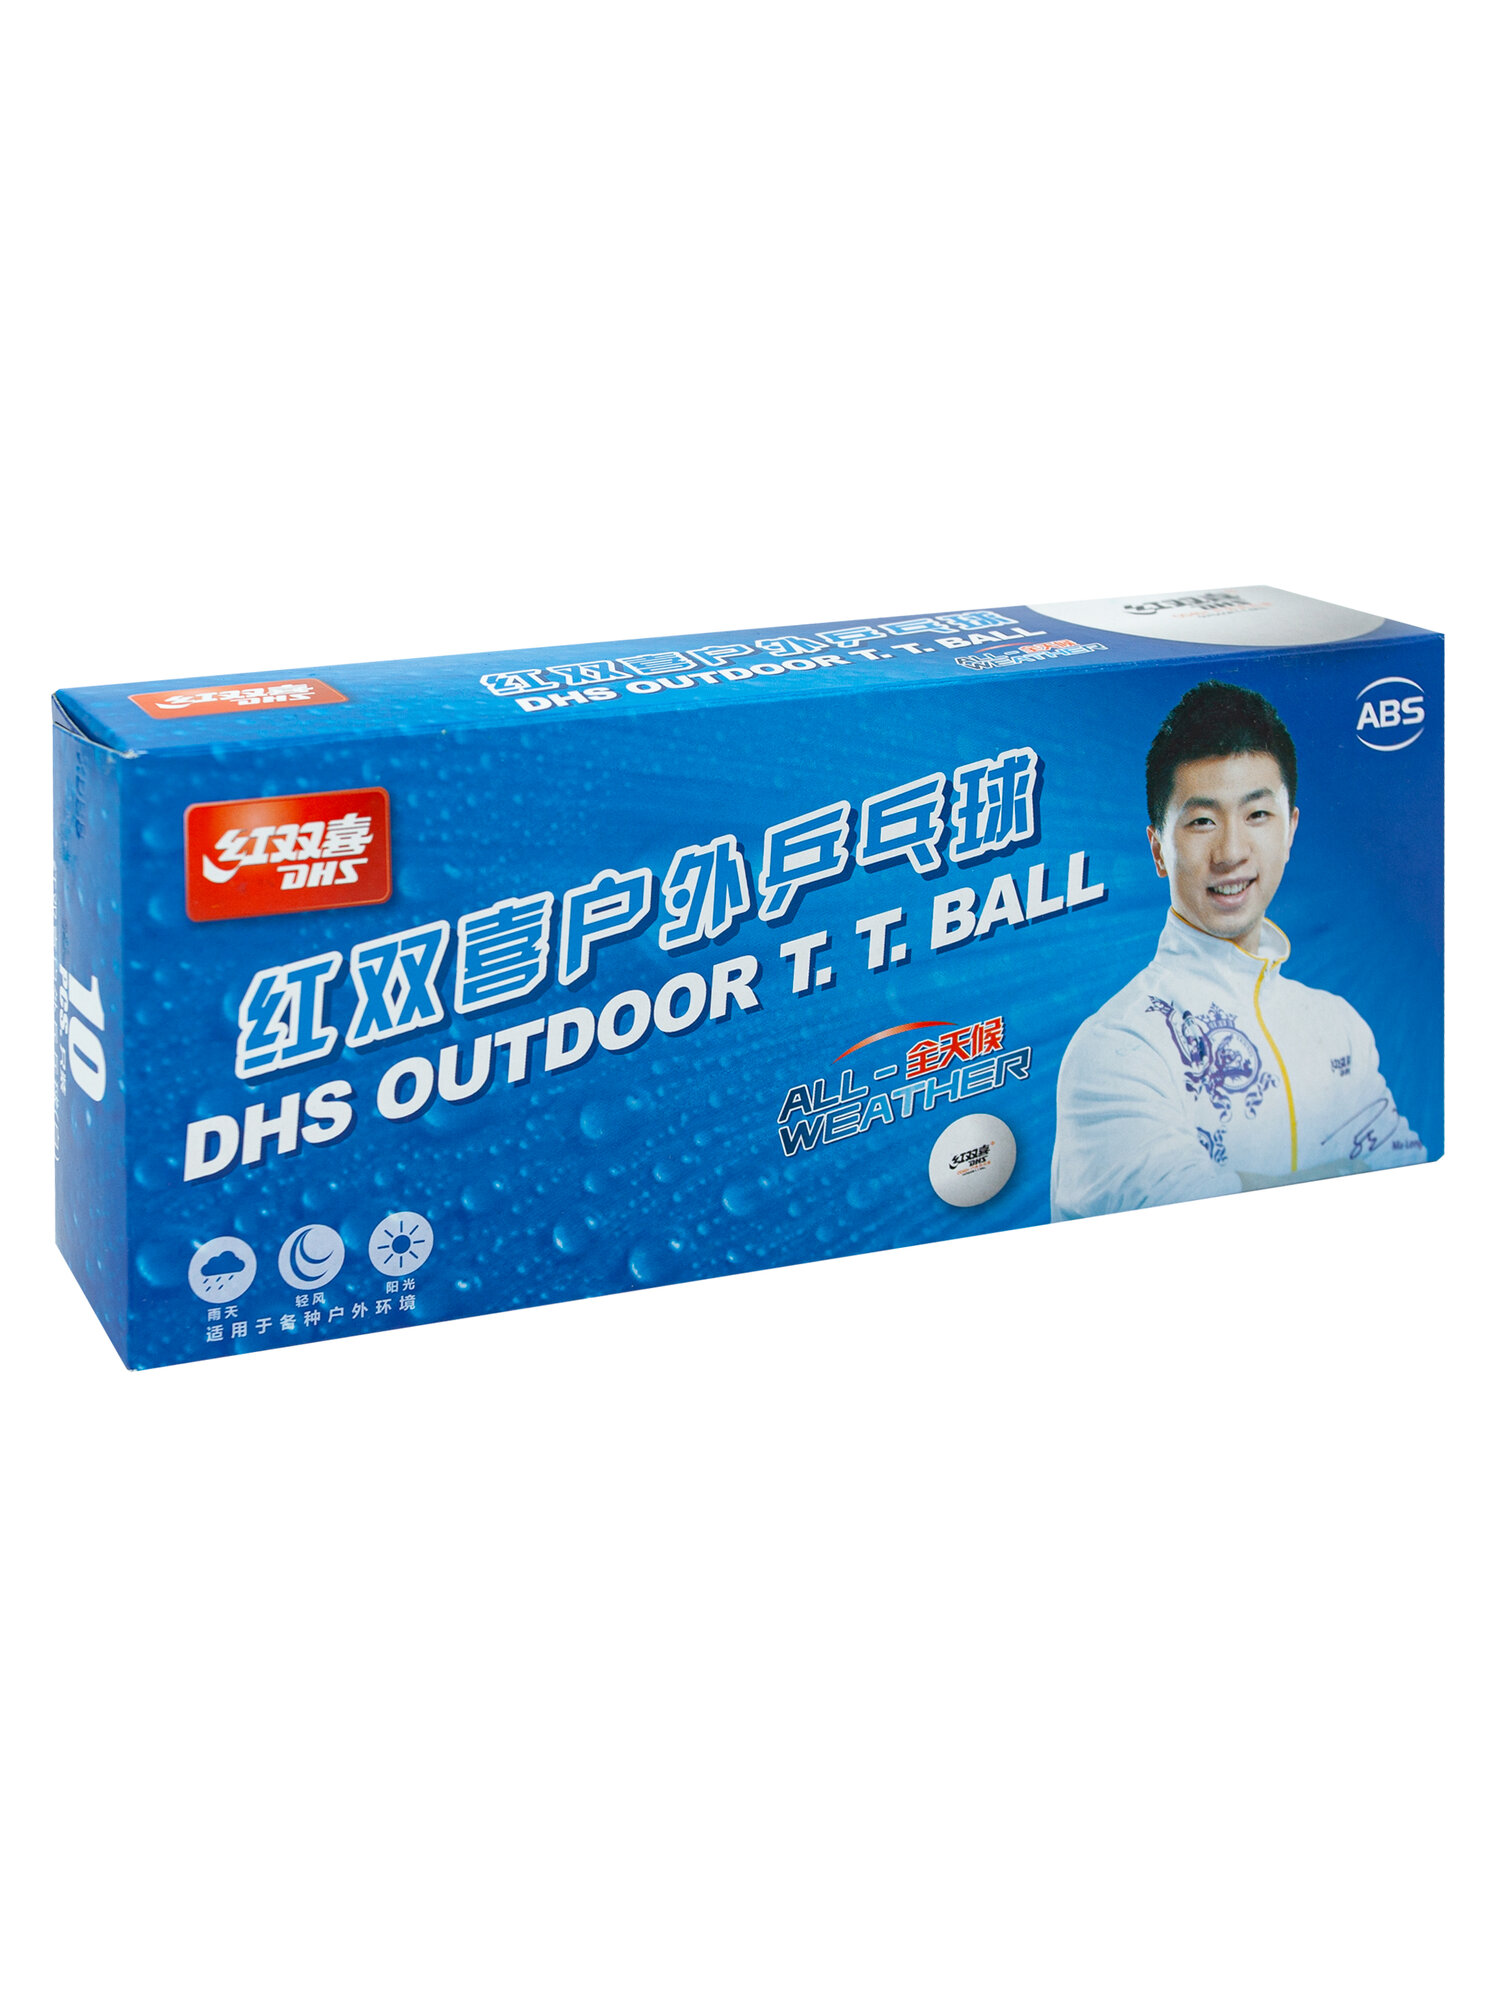 Мячи для настольного тенниса DHS D40+ (DUAL) OUTDOOR бел. 10 шт.